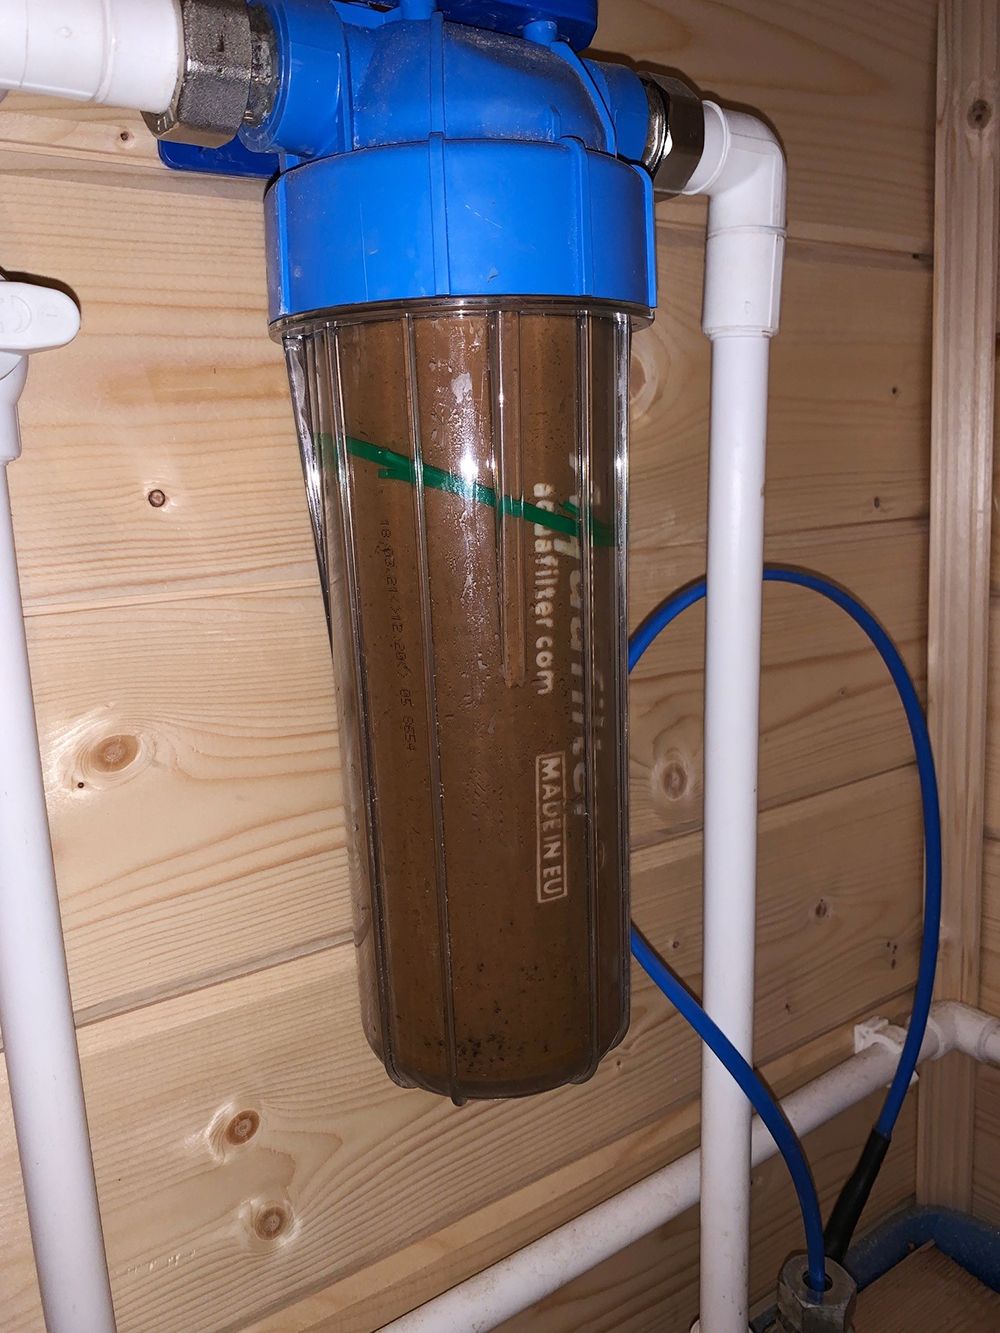 Так выглядел фильтр для воды до того, как я установил водоочистку. Он забивался за сутки и дальше пропускал ржавую воду